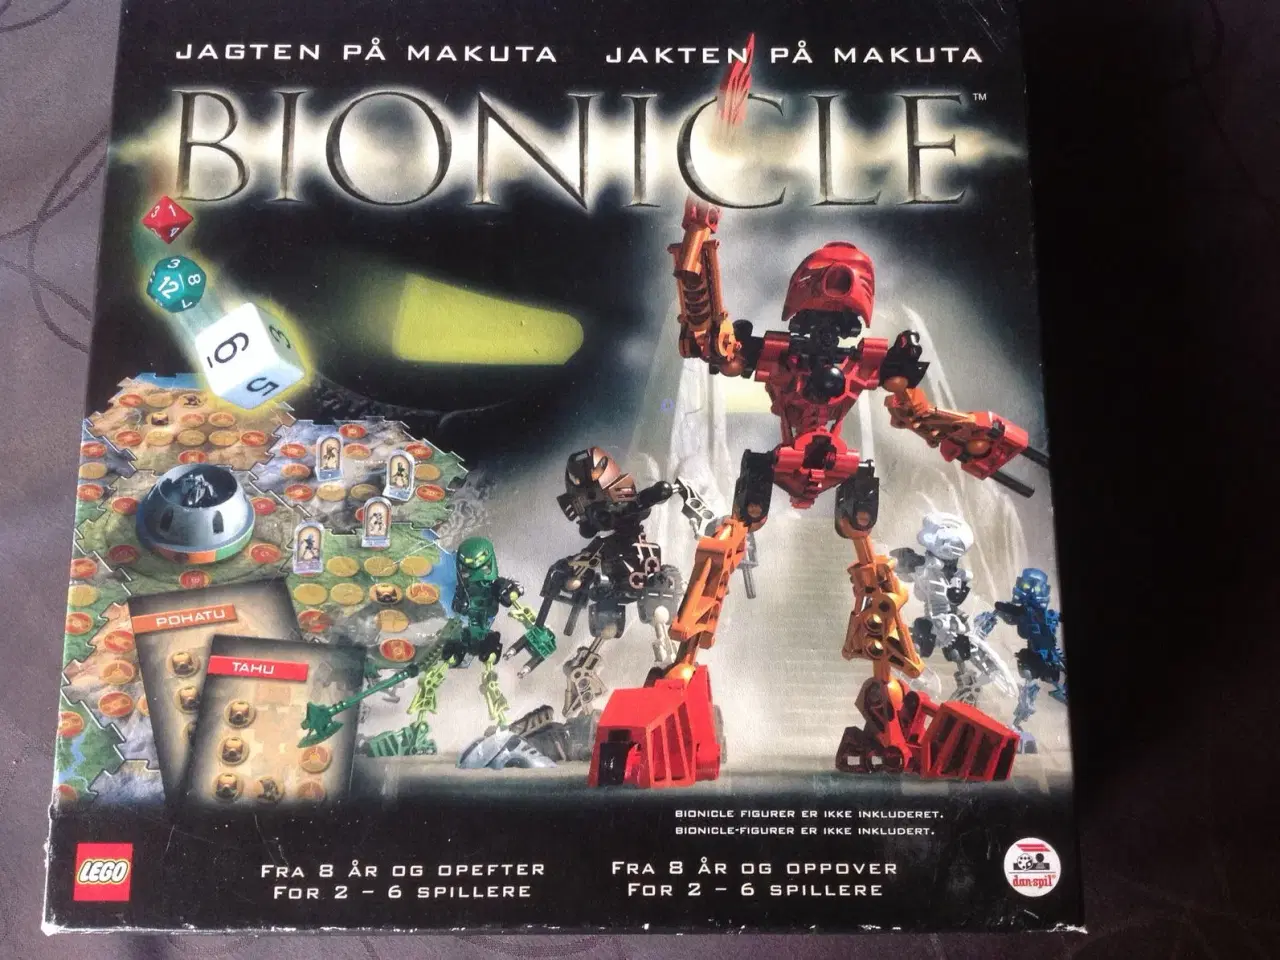 Billede 1 - Bionicle brætspil sælges